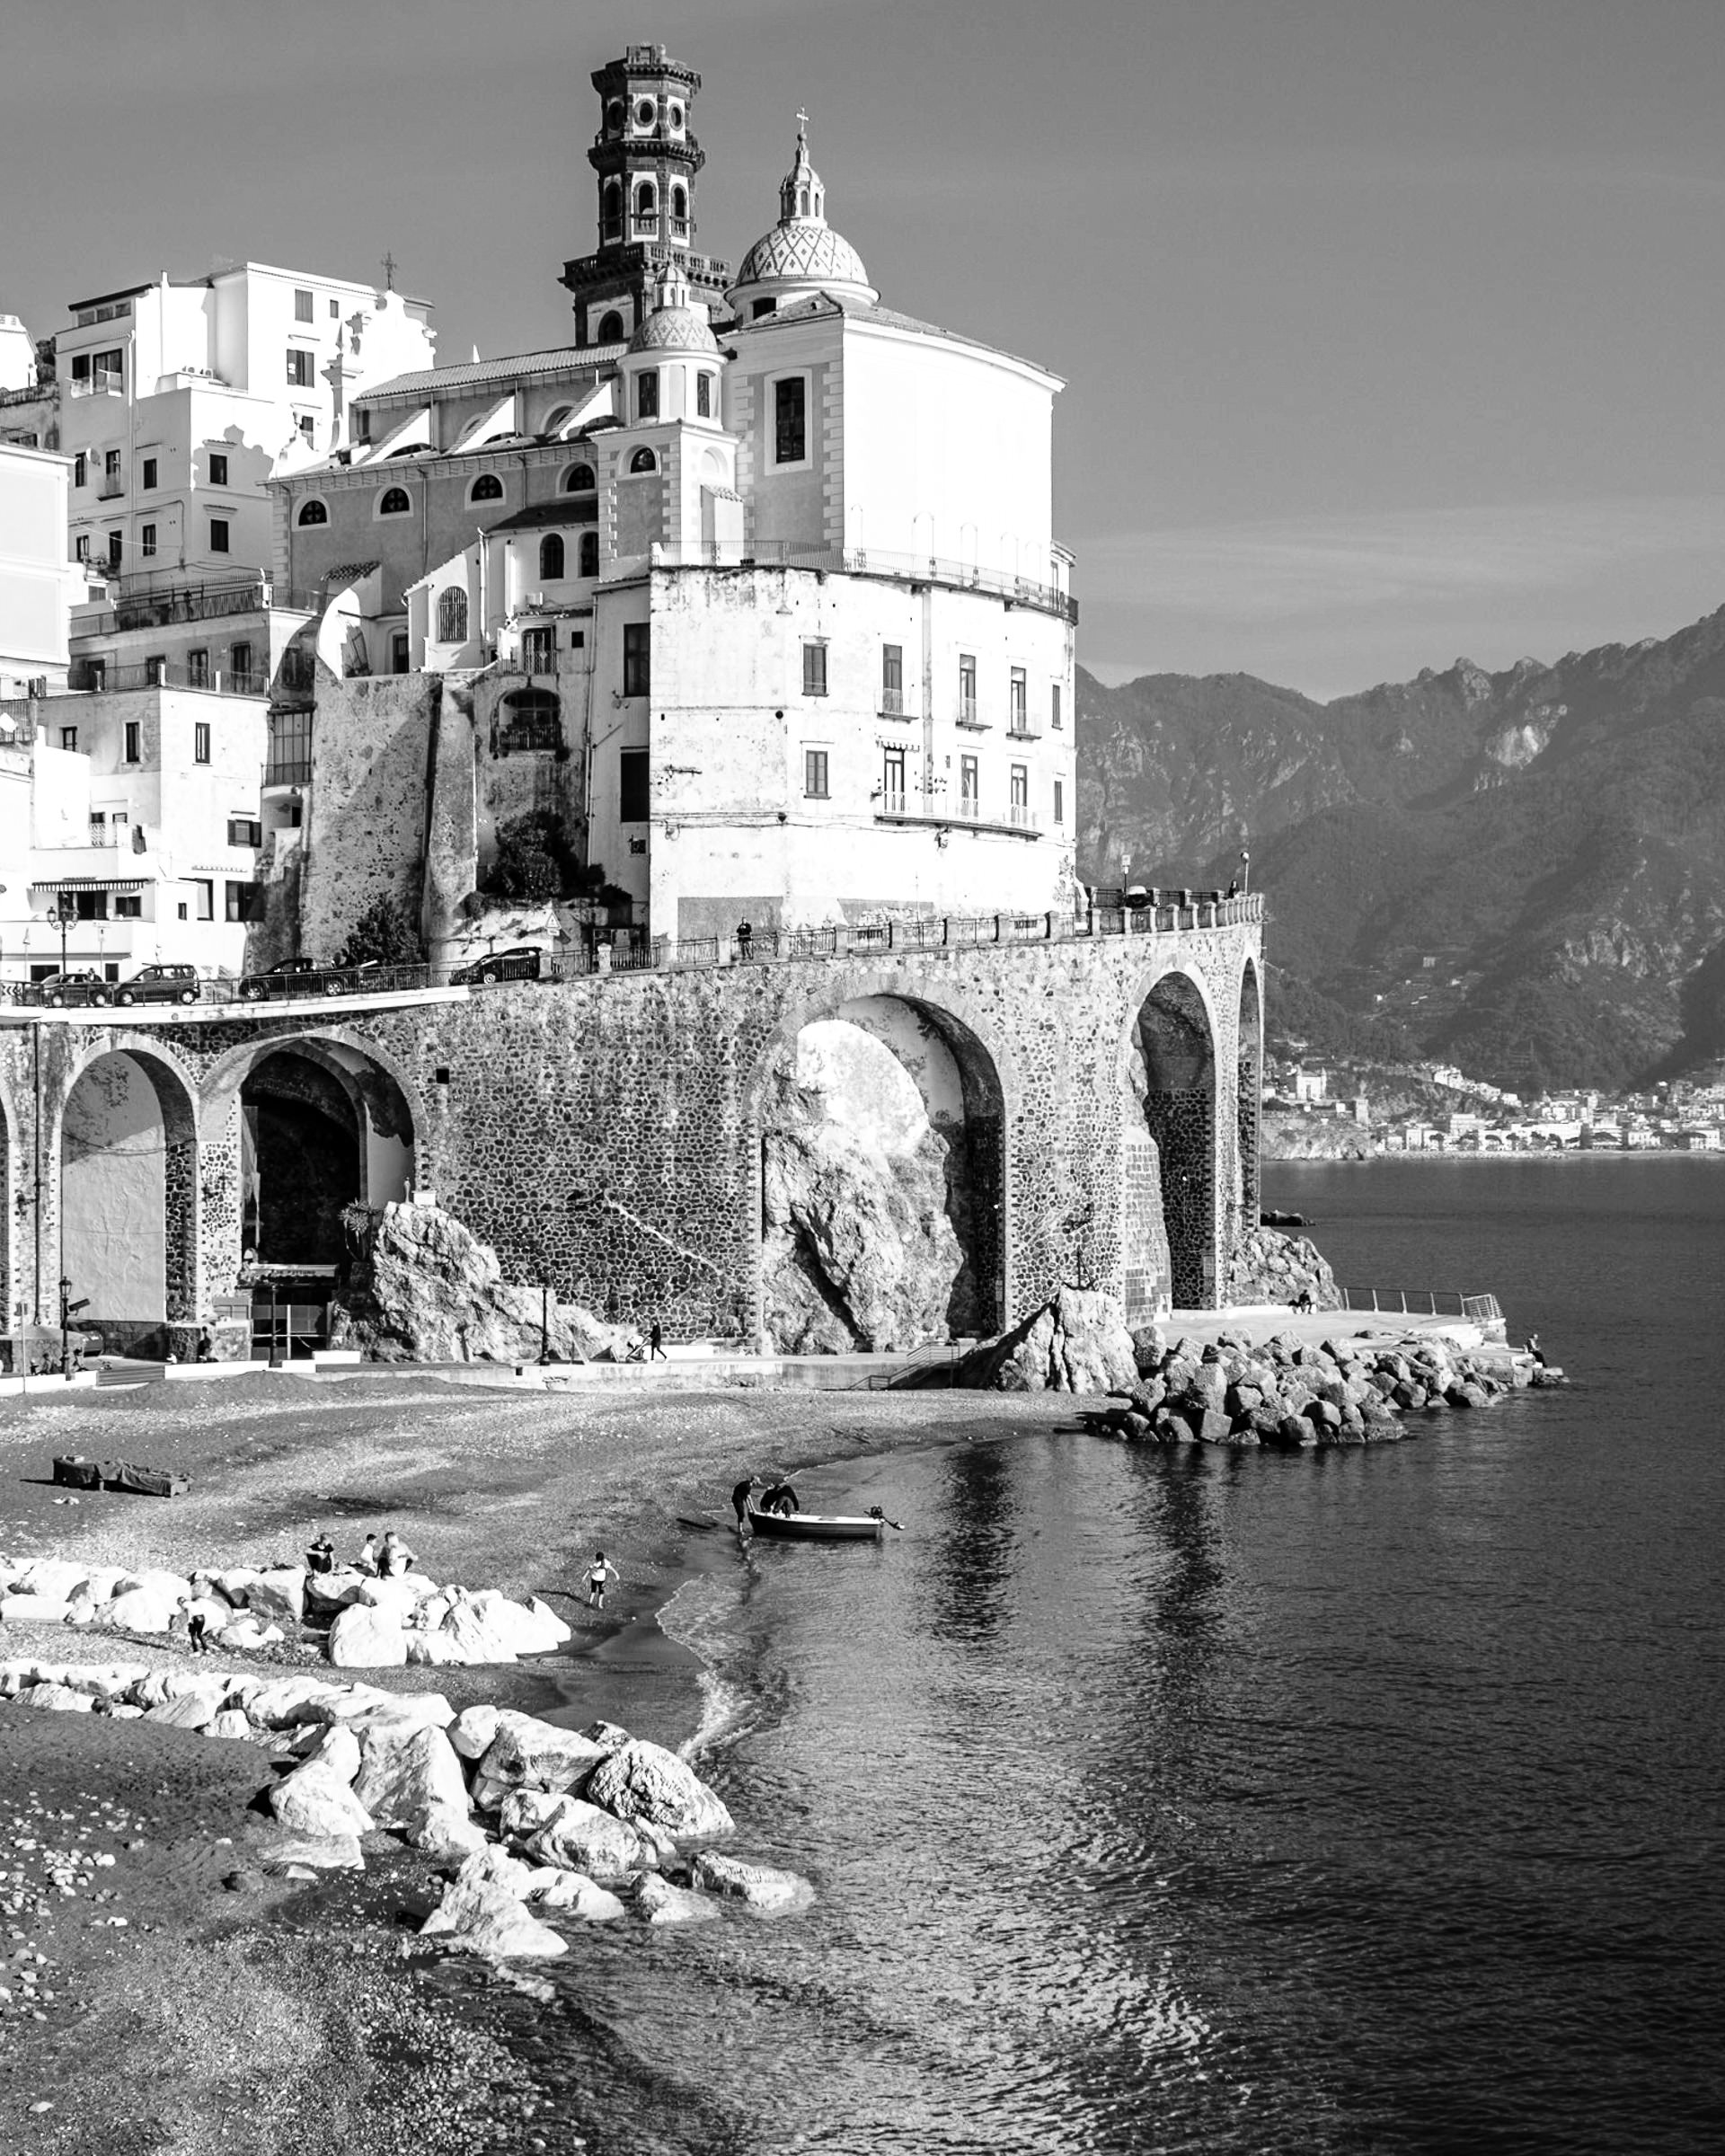 eine Bildstrecke/Reportage über Amalfi nach der Saison